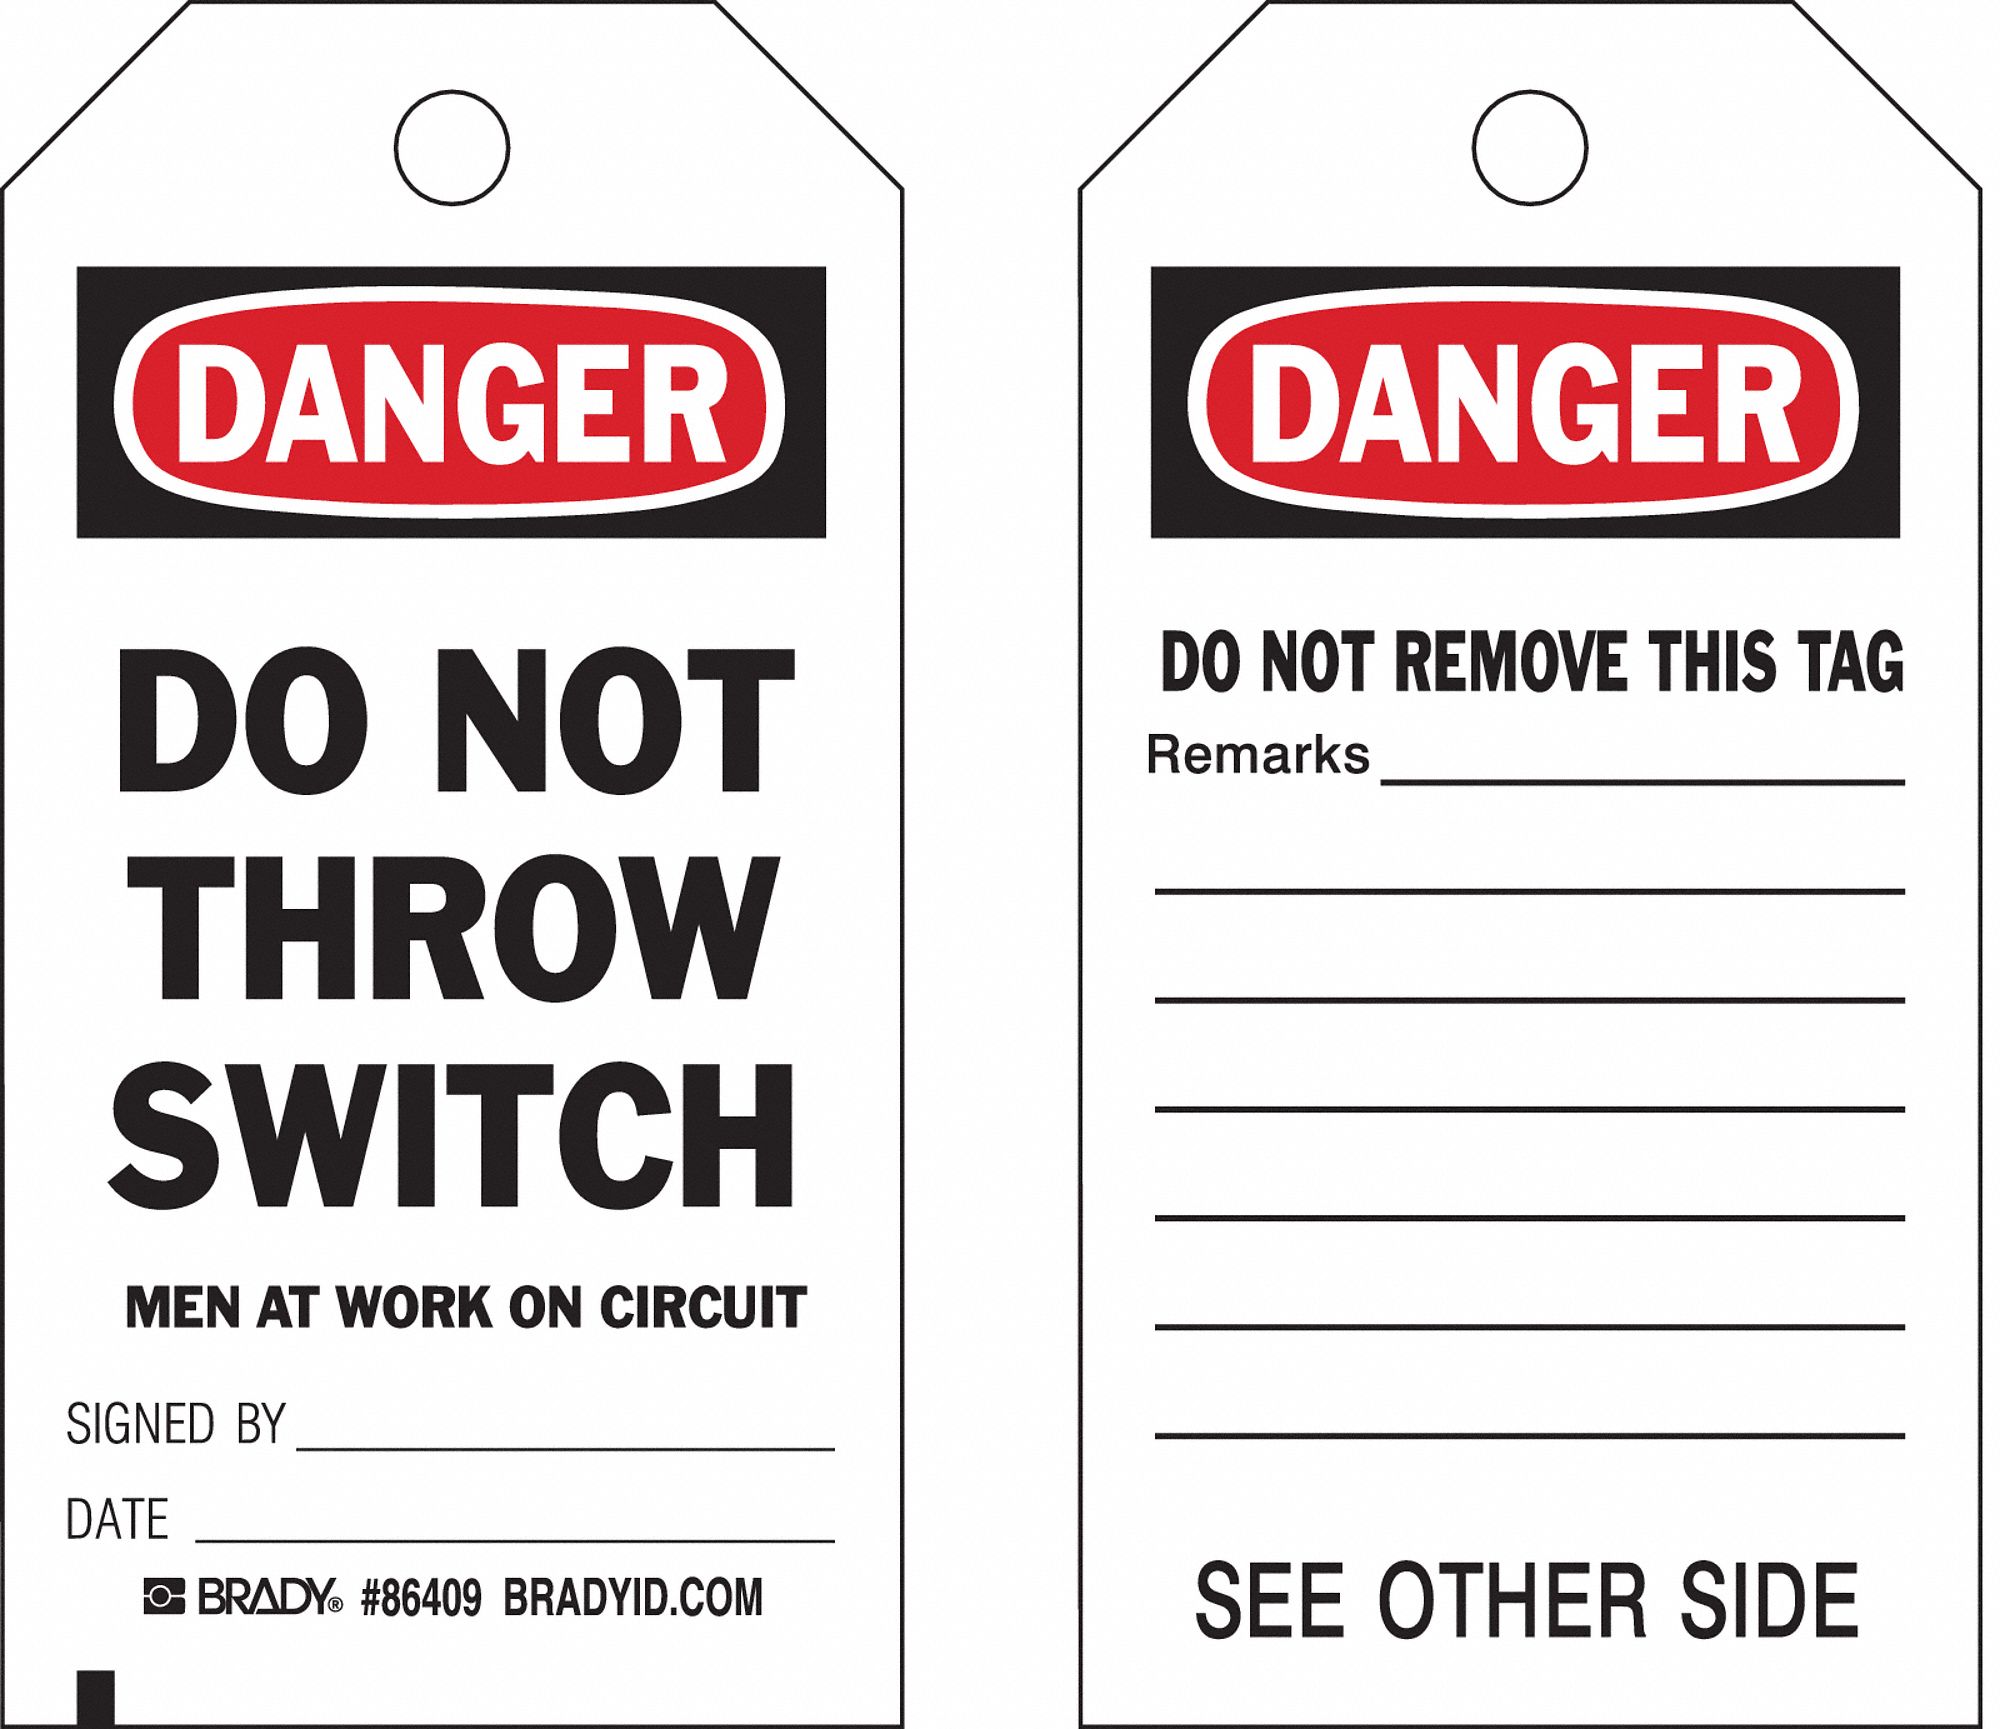 CardstockDo Not Throw Switch Men At Work On Circuit, Danger Tag 7